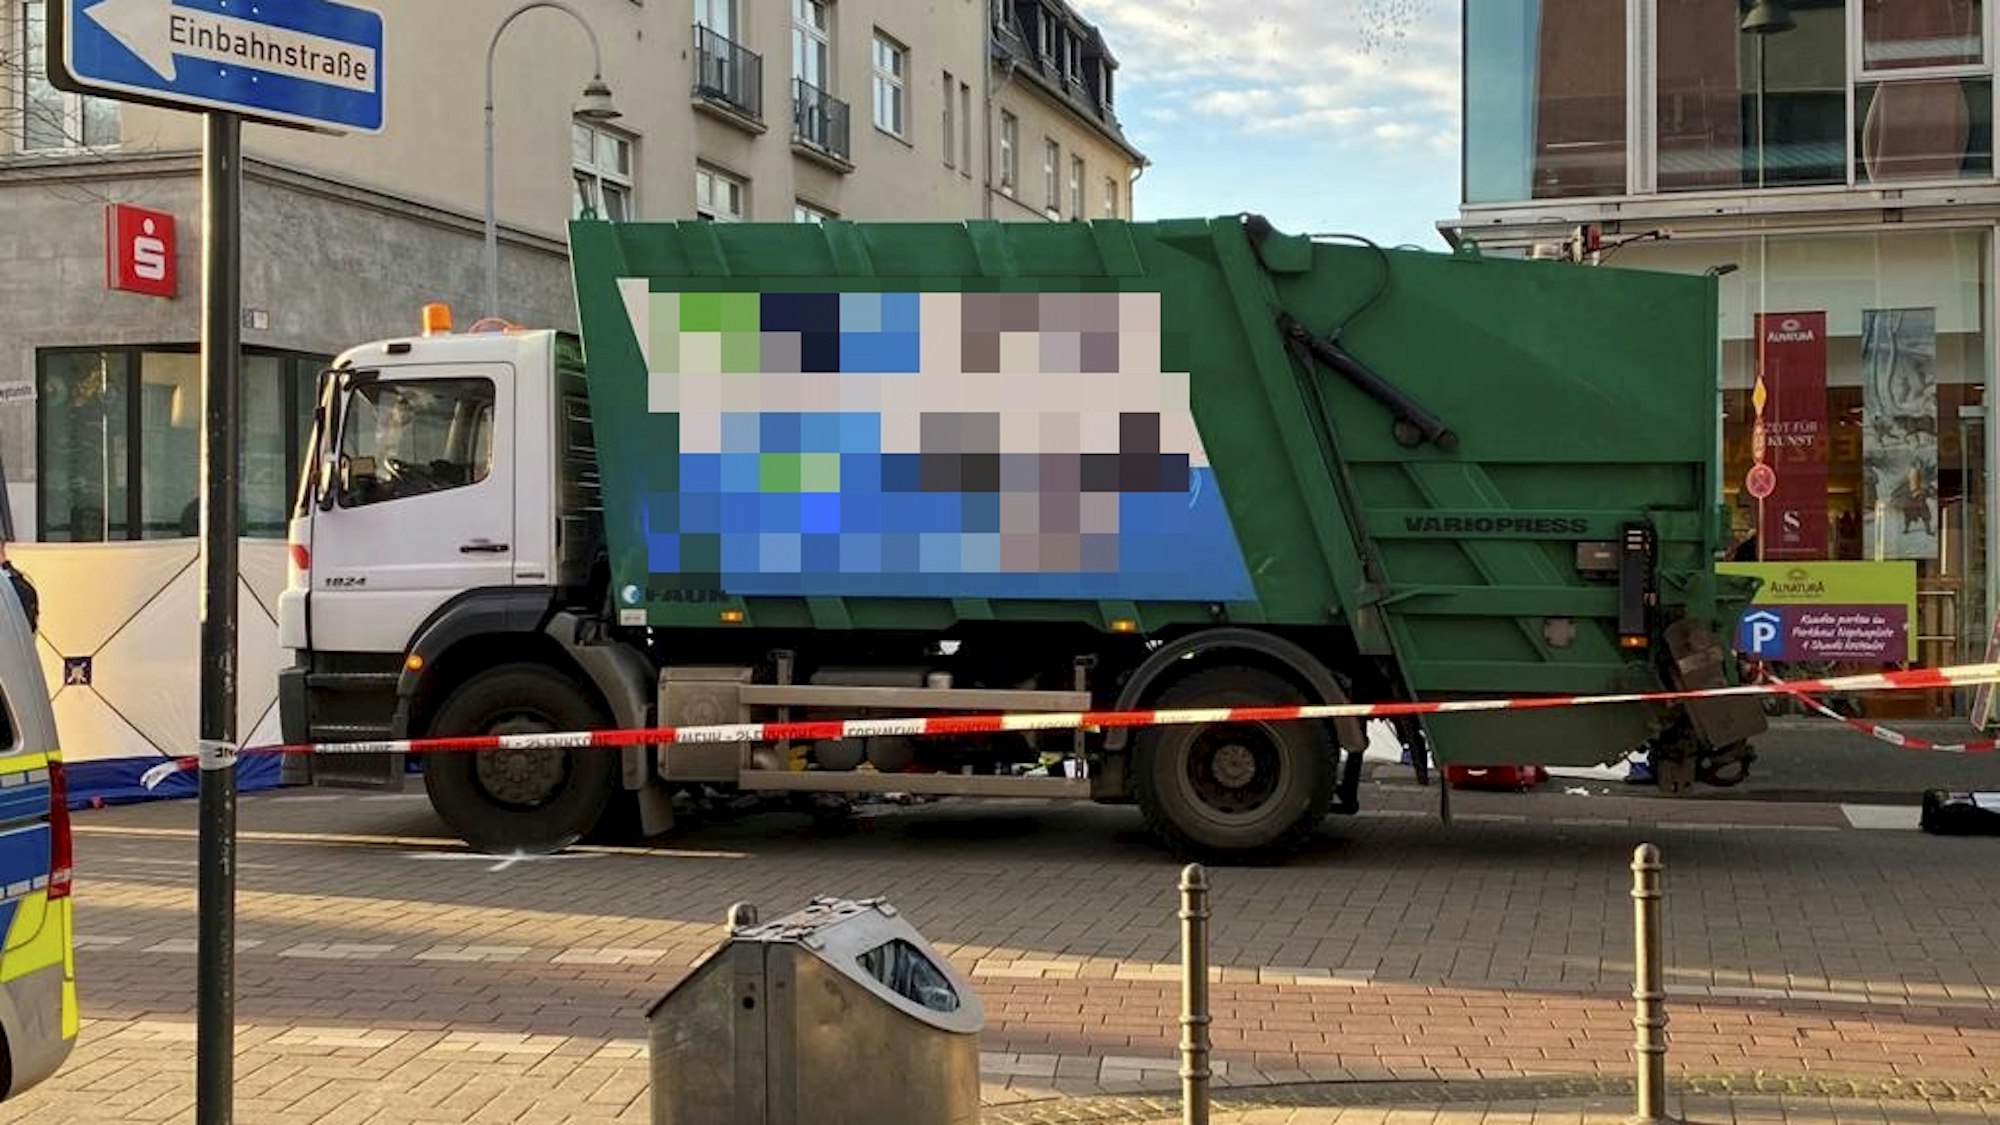 Ein Müllwagen steht auf der Straße, davor ist Absperrband der Polizei gespannt.